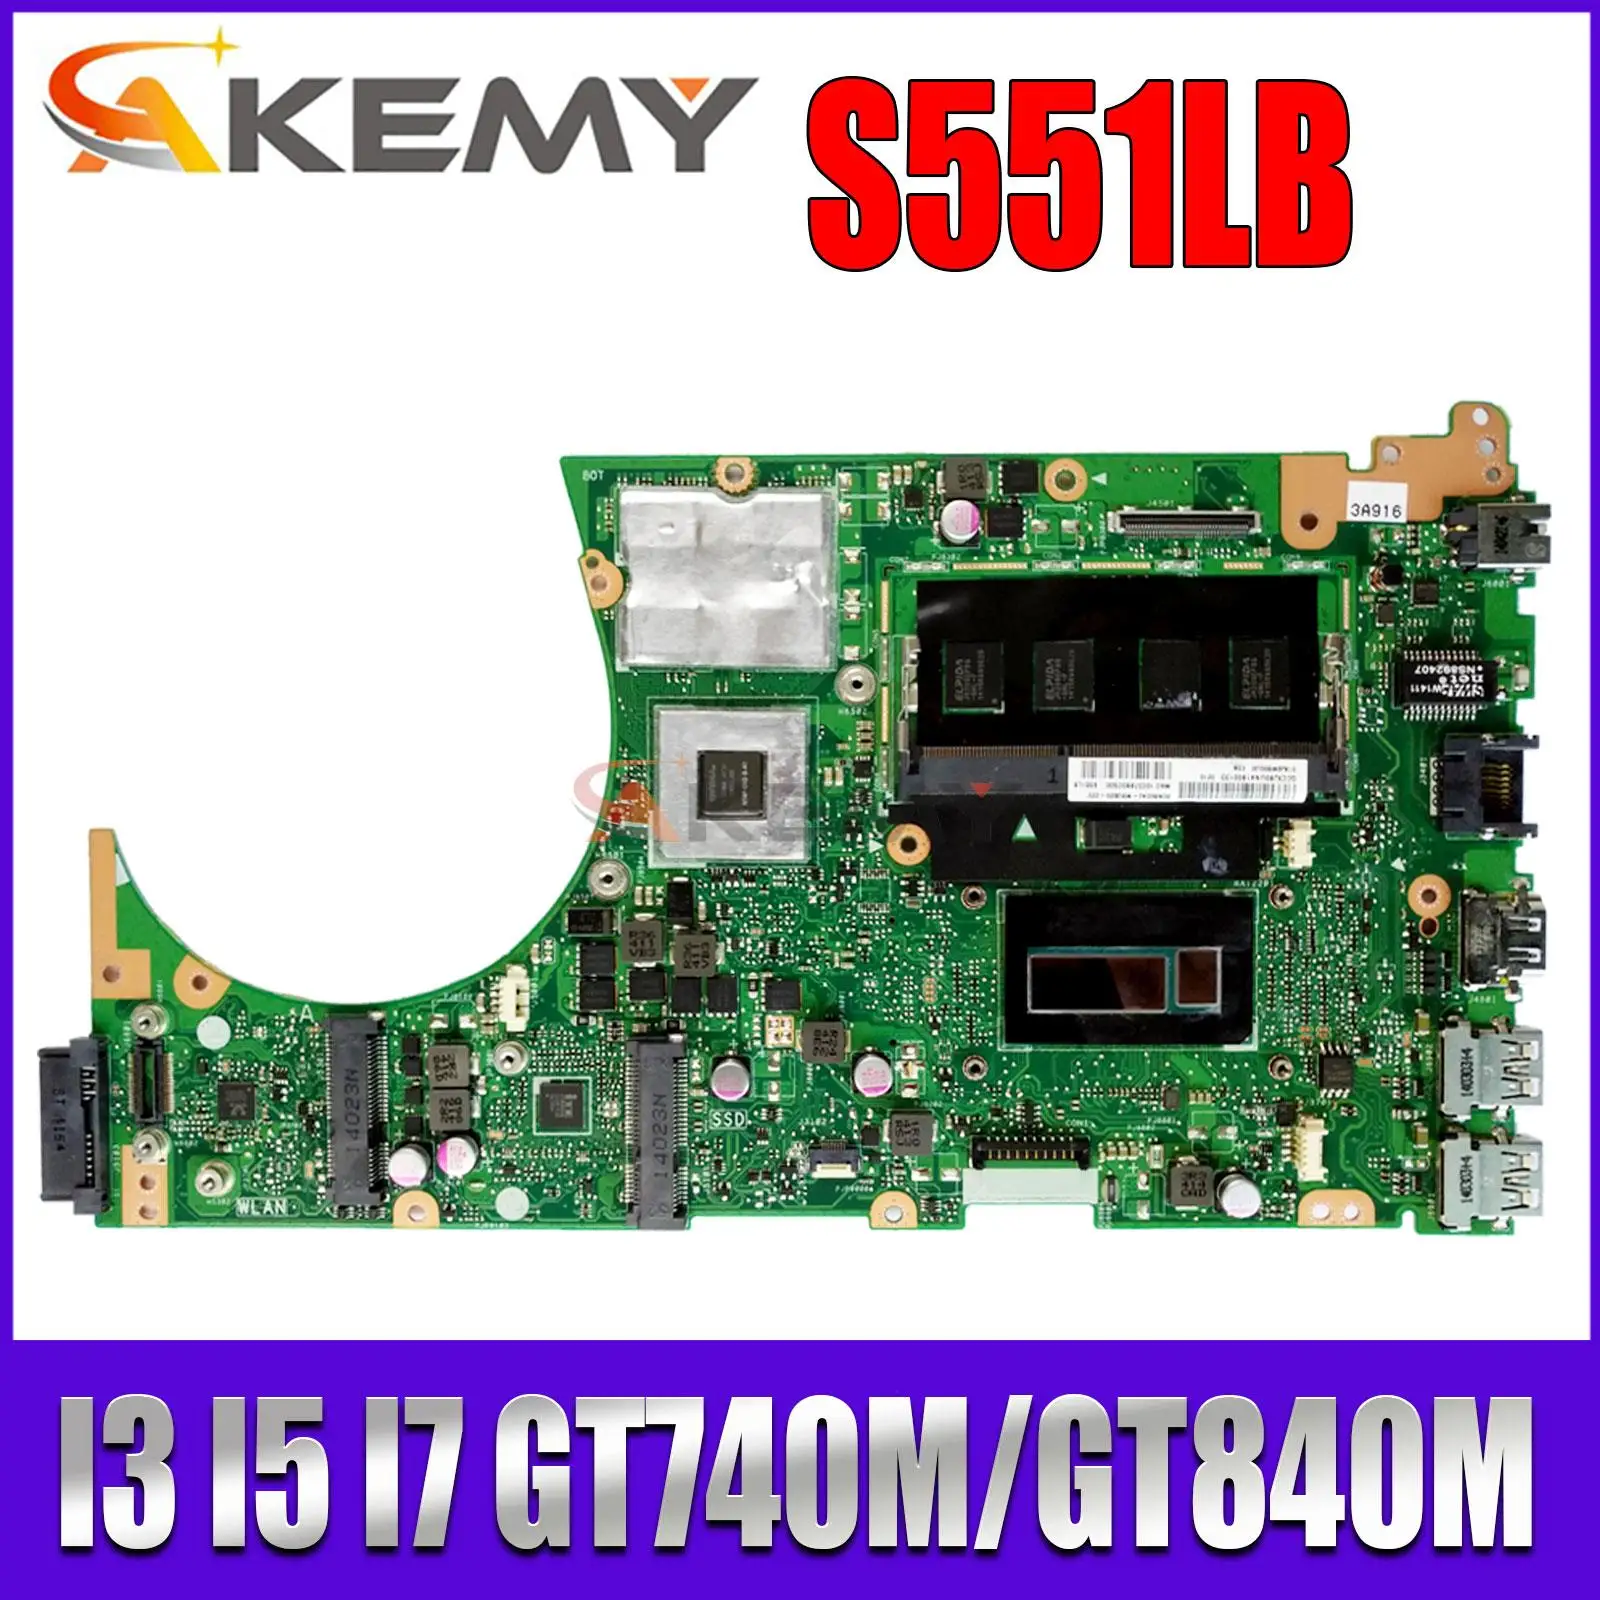 

Ноутбук S551LN Материнская плата ASUS S551L S551LB R553L S551LA 0 материнская плата для ноутбука I3 I5 I7 4 ГБ/RAM UMA/GT740M/GT840M